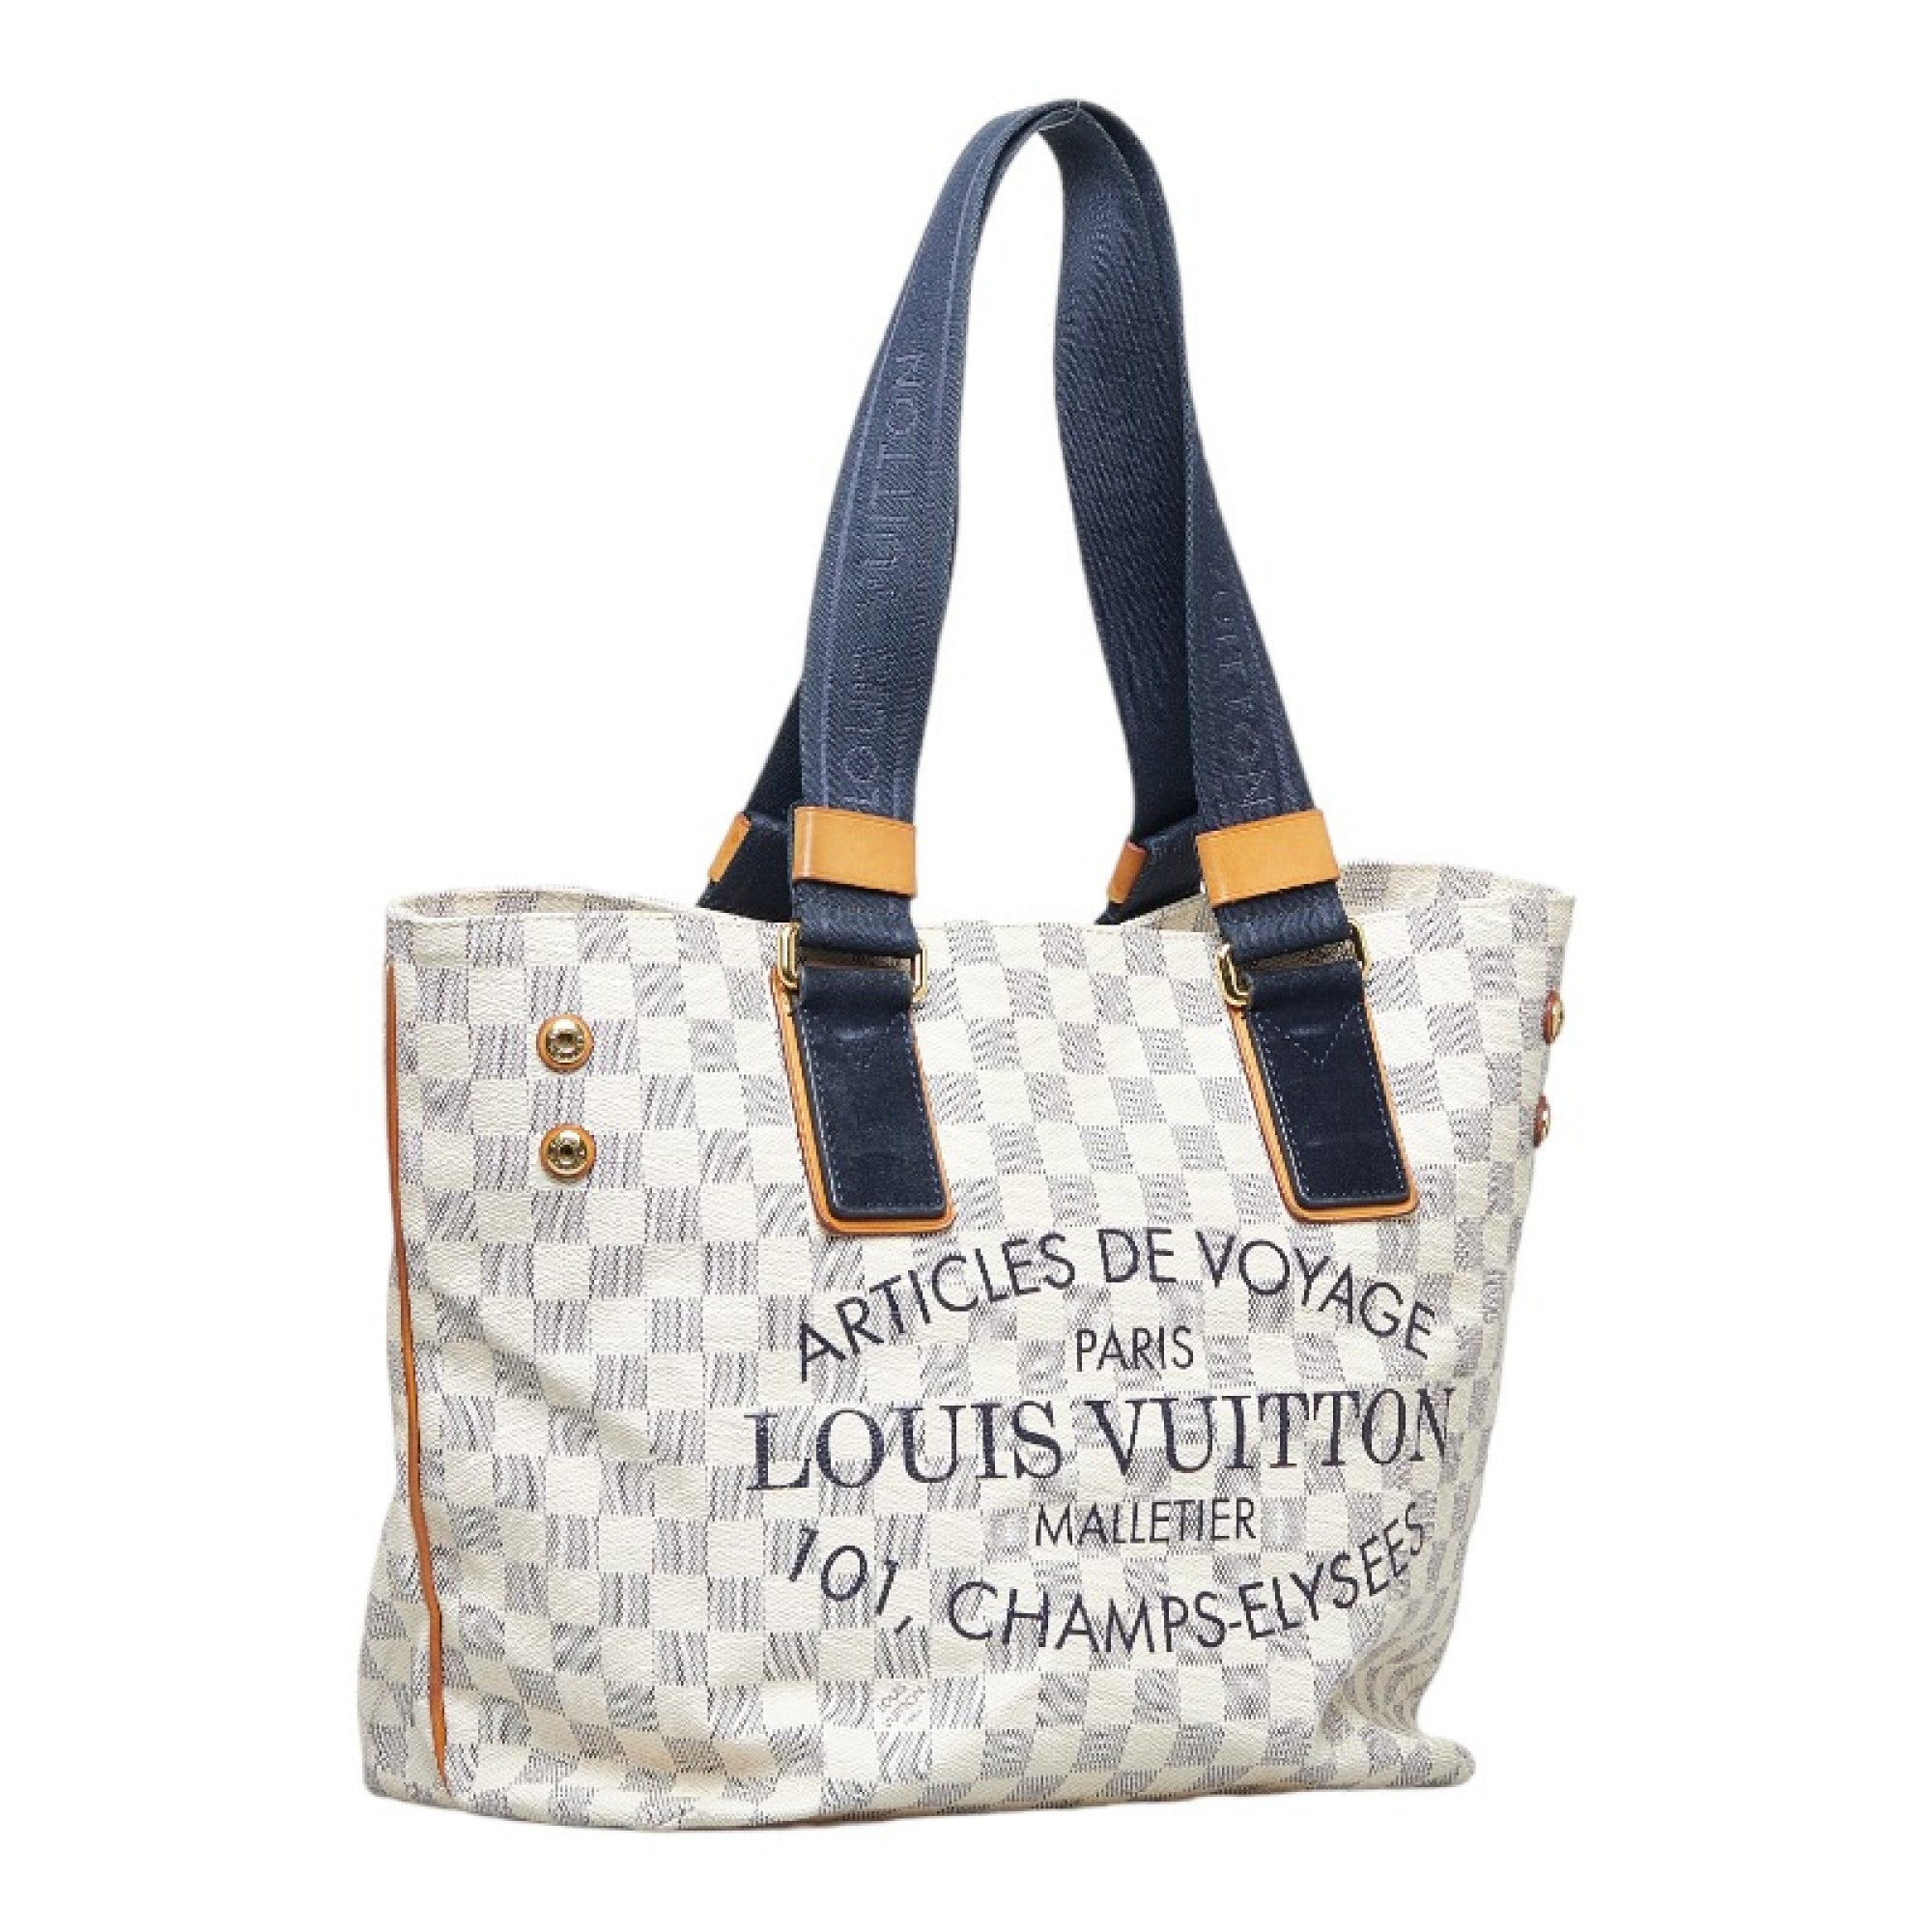 Sold at Auction: Louis Vuitton, LOUIS VUITTON 'CABAS ARTICLES DE